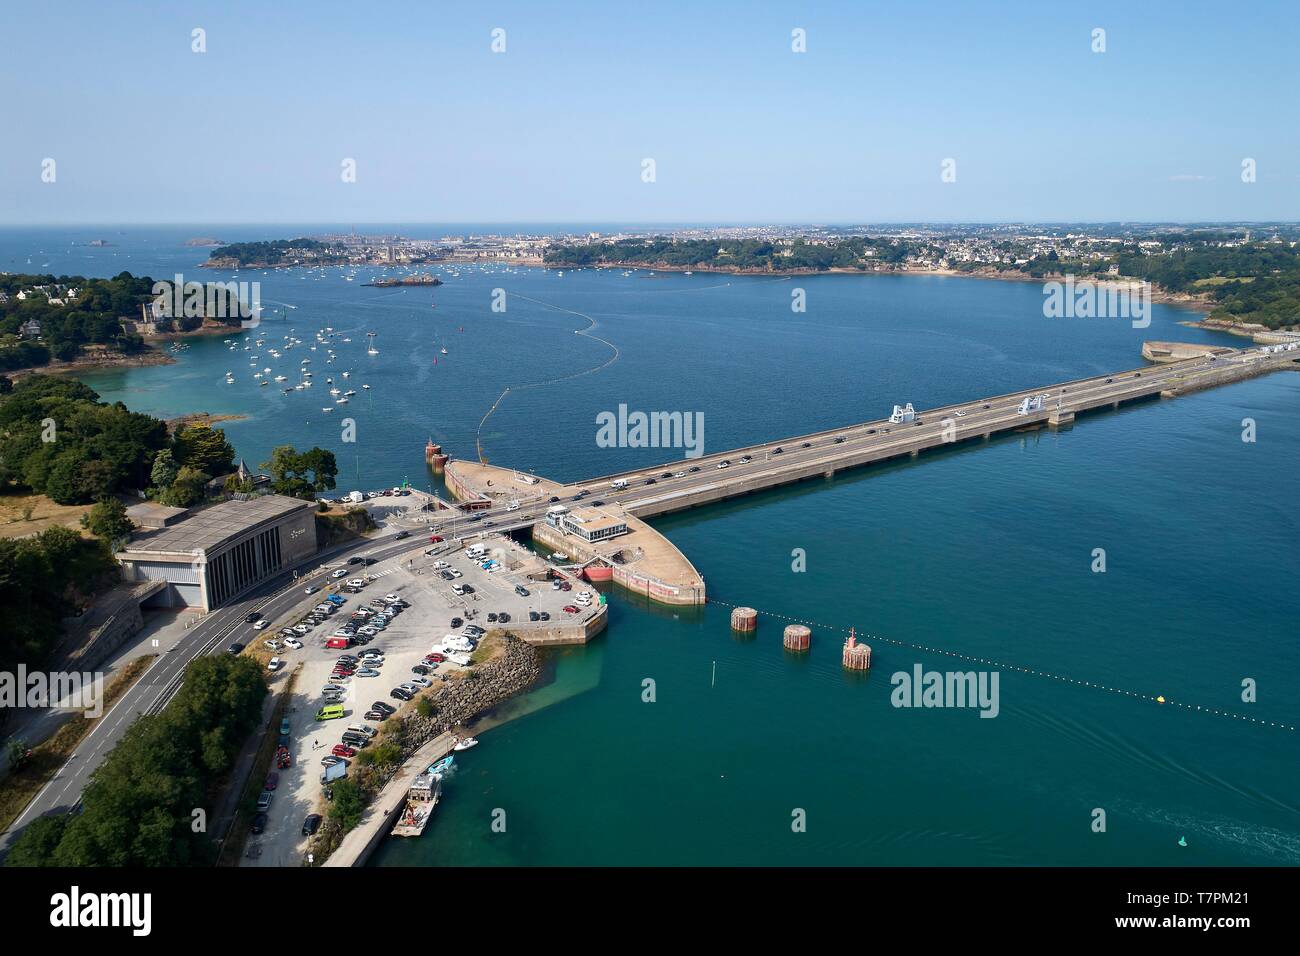 France, Ille et Vilaine, Cote d'Emeraude (Emerald Cost), Saint Malo, La Richardais, the dam barrage de la Rance, tidal power station (aerial view) Stock Photo